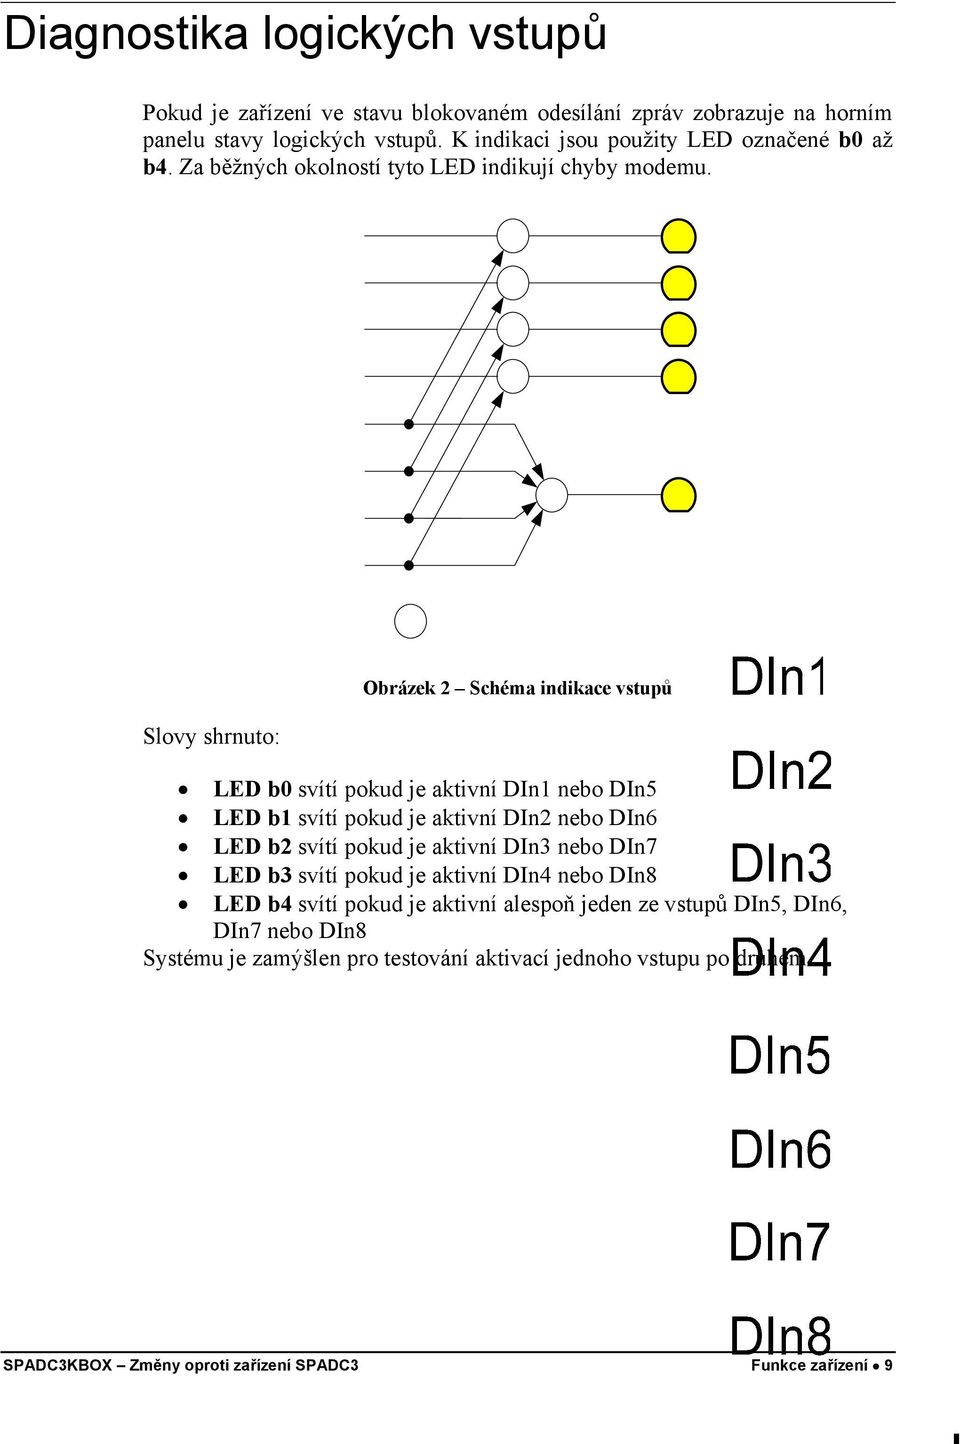 Slovy shrnuto: Obrázek 2 Schéma indikace vstupů LED b0 svítí pokud je aktivní DIn1 nebo DIn5 LED b1 svítí pokud je aktivní DIn2 nebo DIn6 LED b2 svítí pokud je aktivní